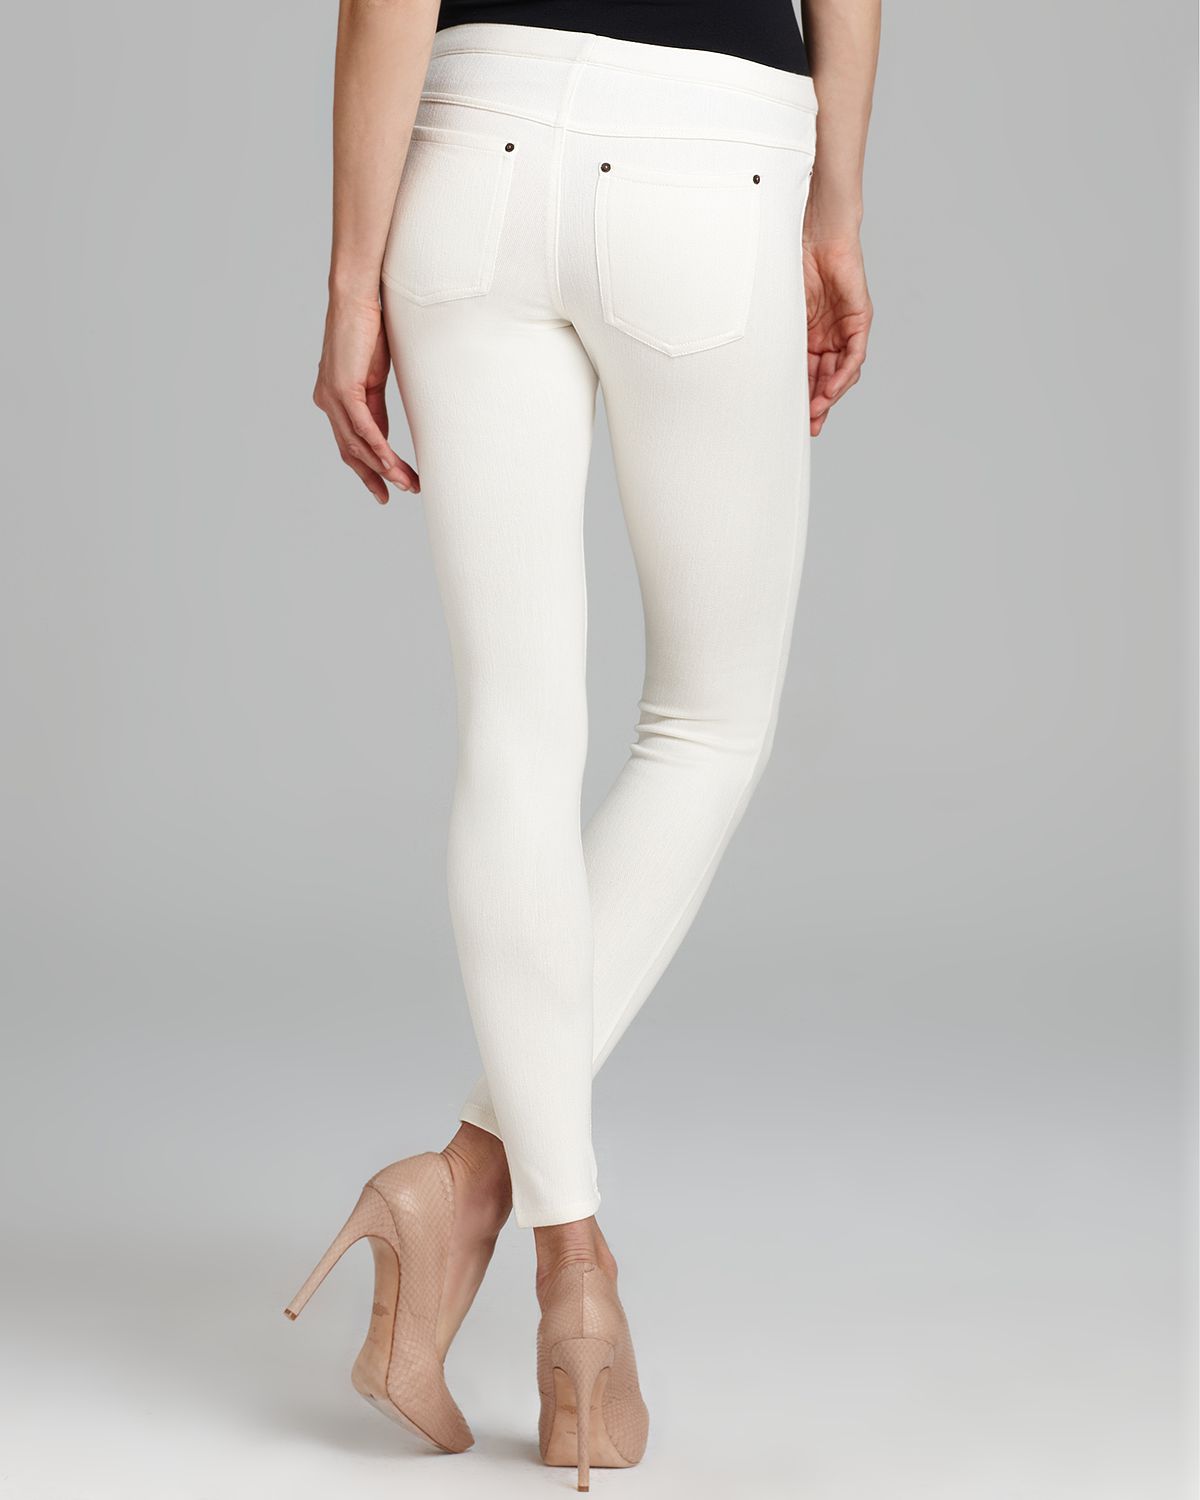 hue white leggings